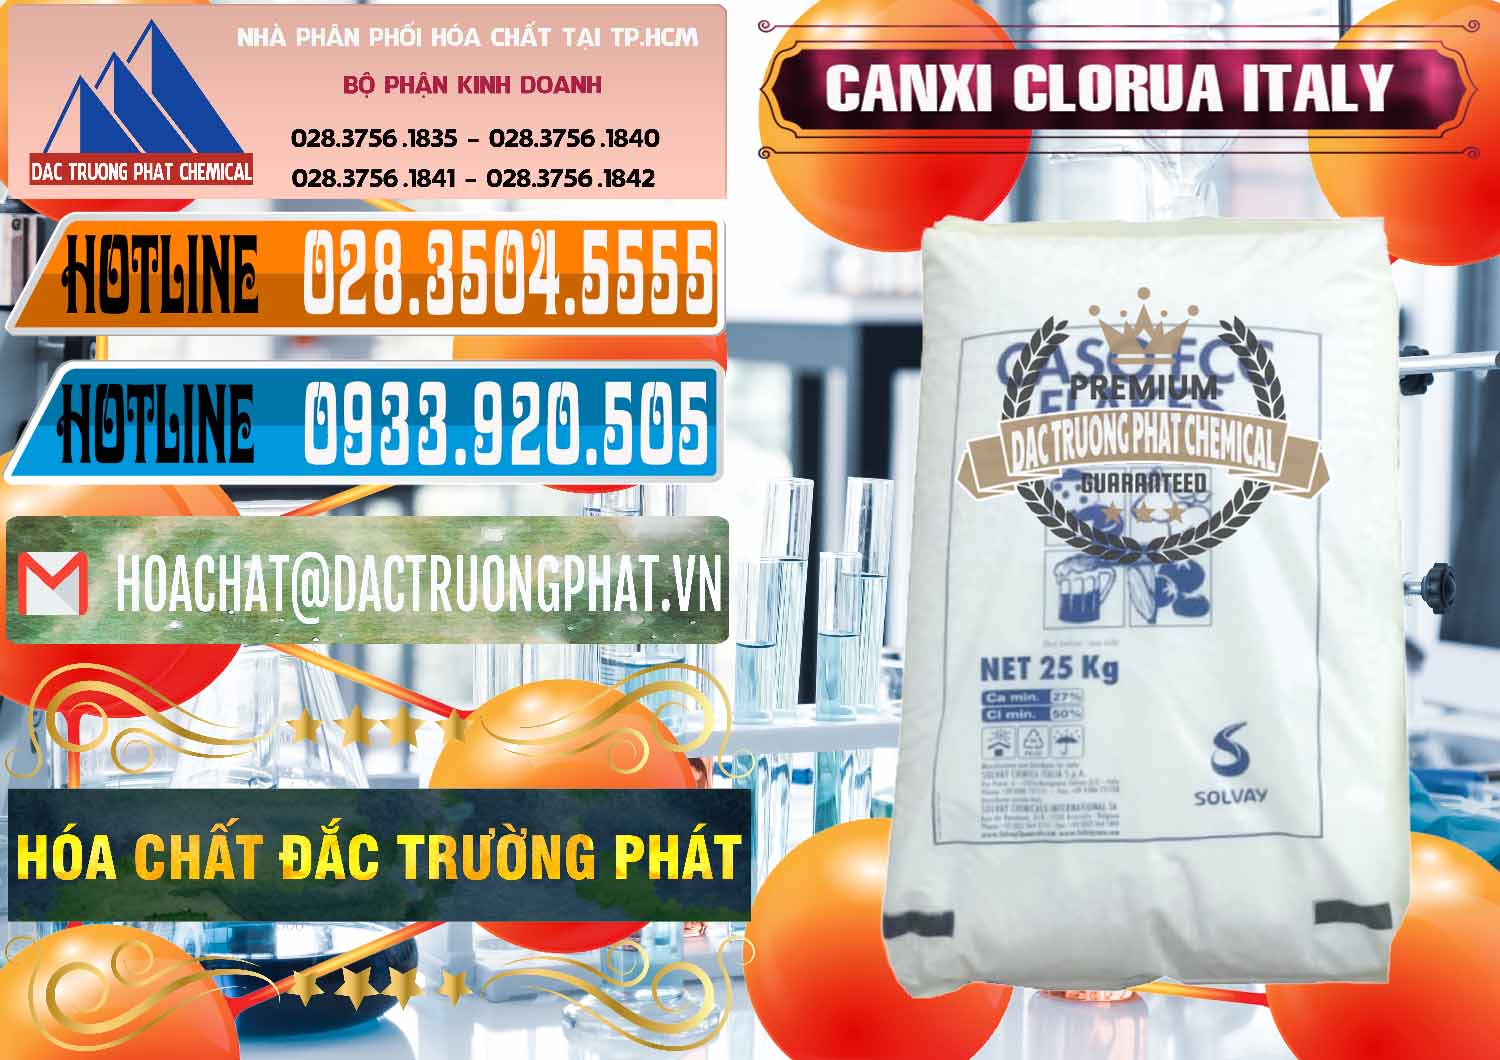 Cty bán _ cung cấp CaCl2 – Canxi Clorua Food Grade Ý Italy - 0435 - Đơn vị chuyên phân phối & cung ứng hóa chất tại TP.HCM - stmp.net